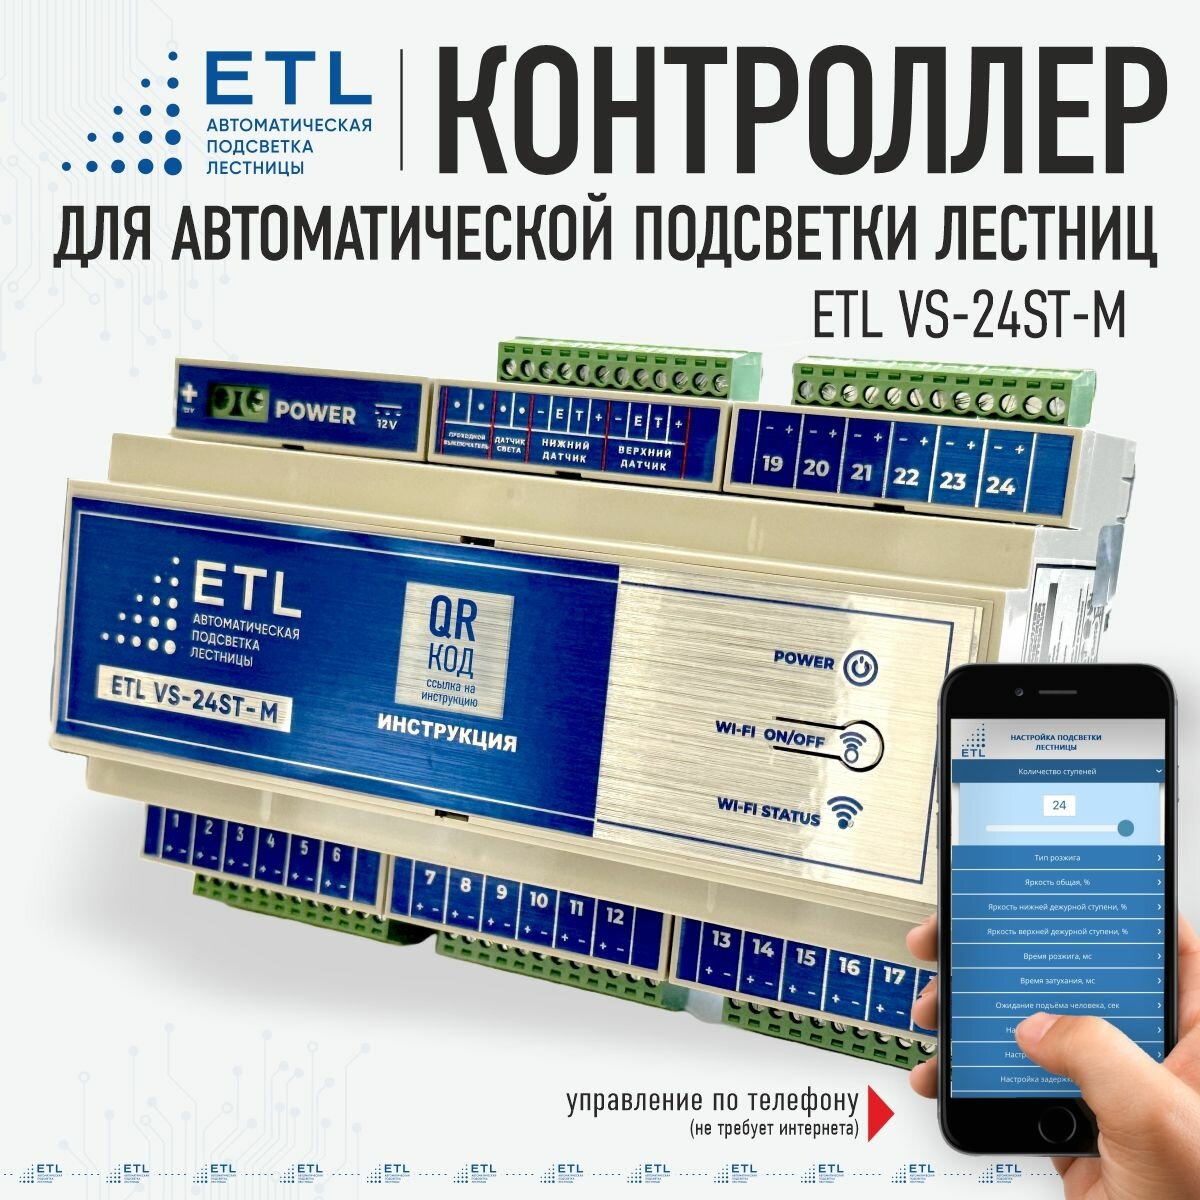 Контроллер ETL VS-24ST-M для управления системой автоматической подсветки лестниц, ступеней - монохром / ETL